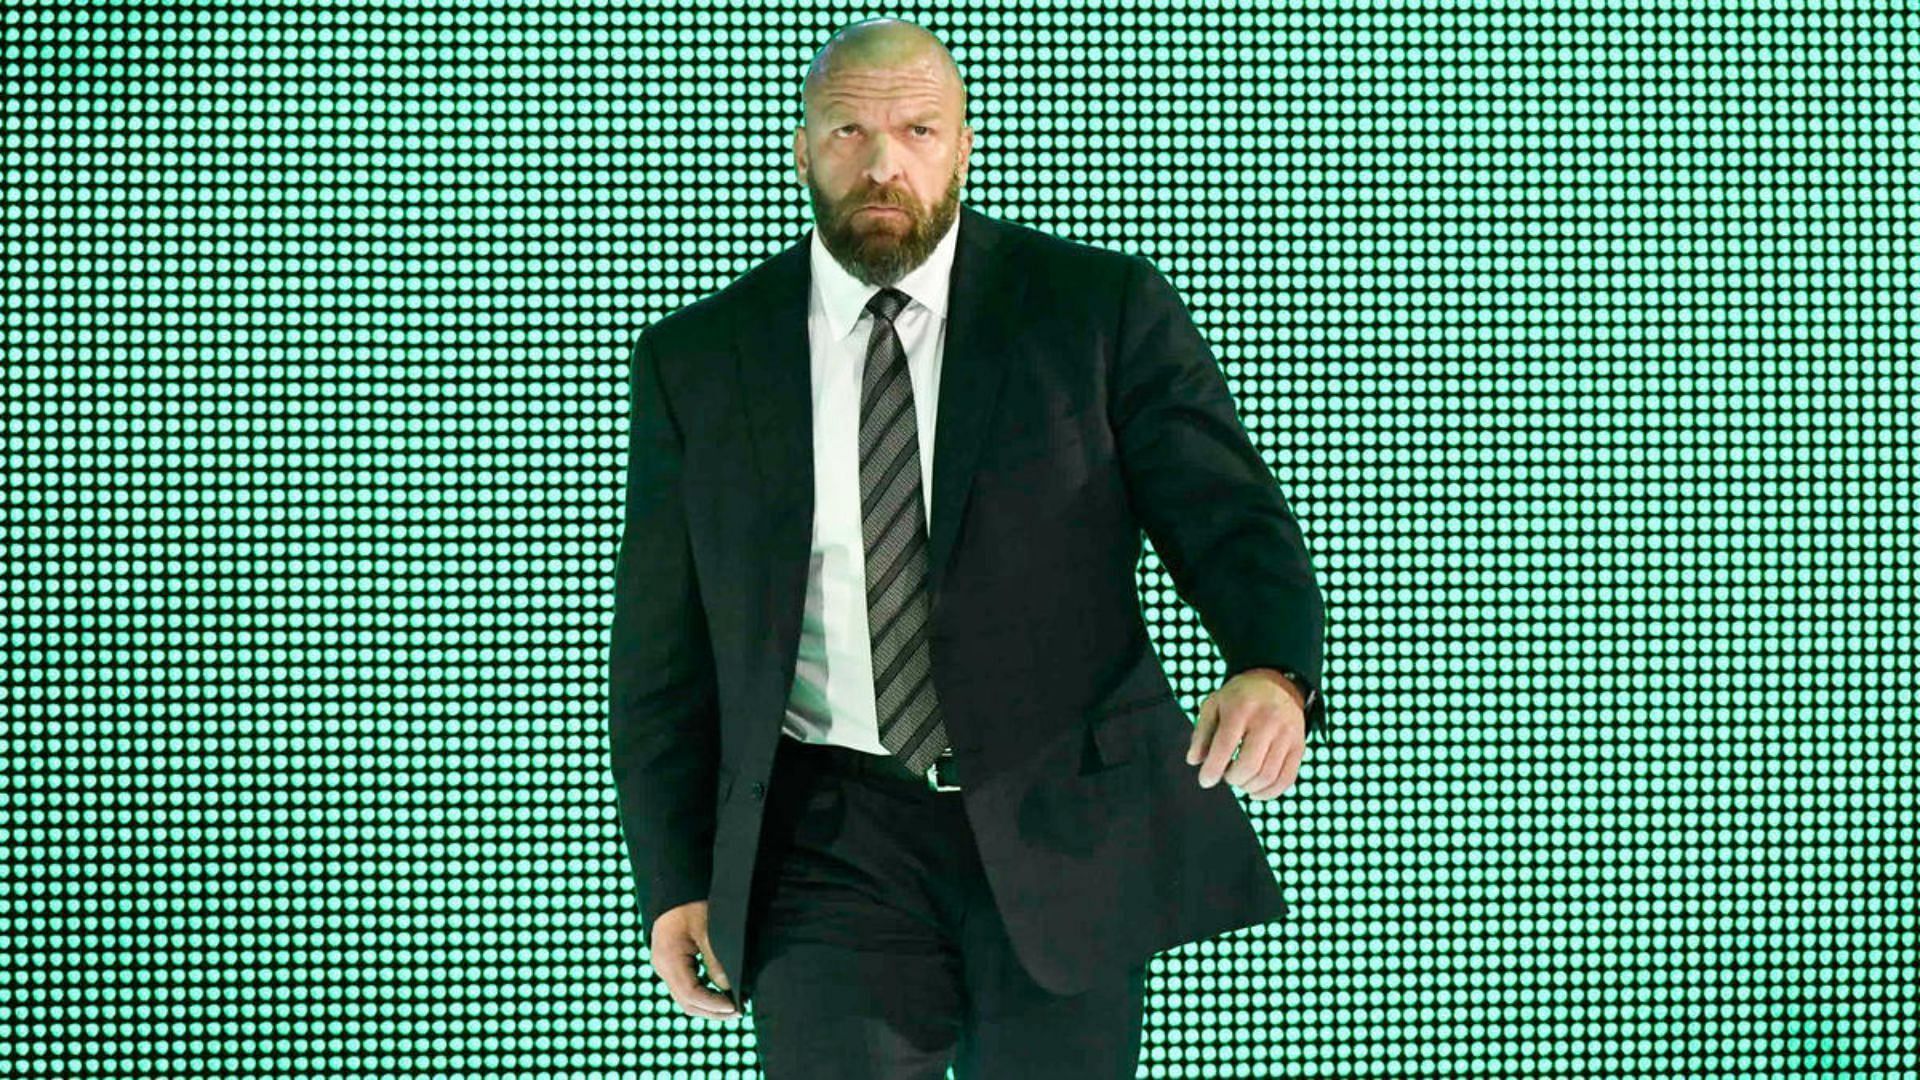 Triple H has done a terrific job thus far as COO of WWE